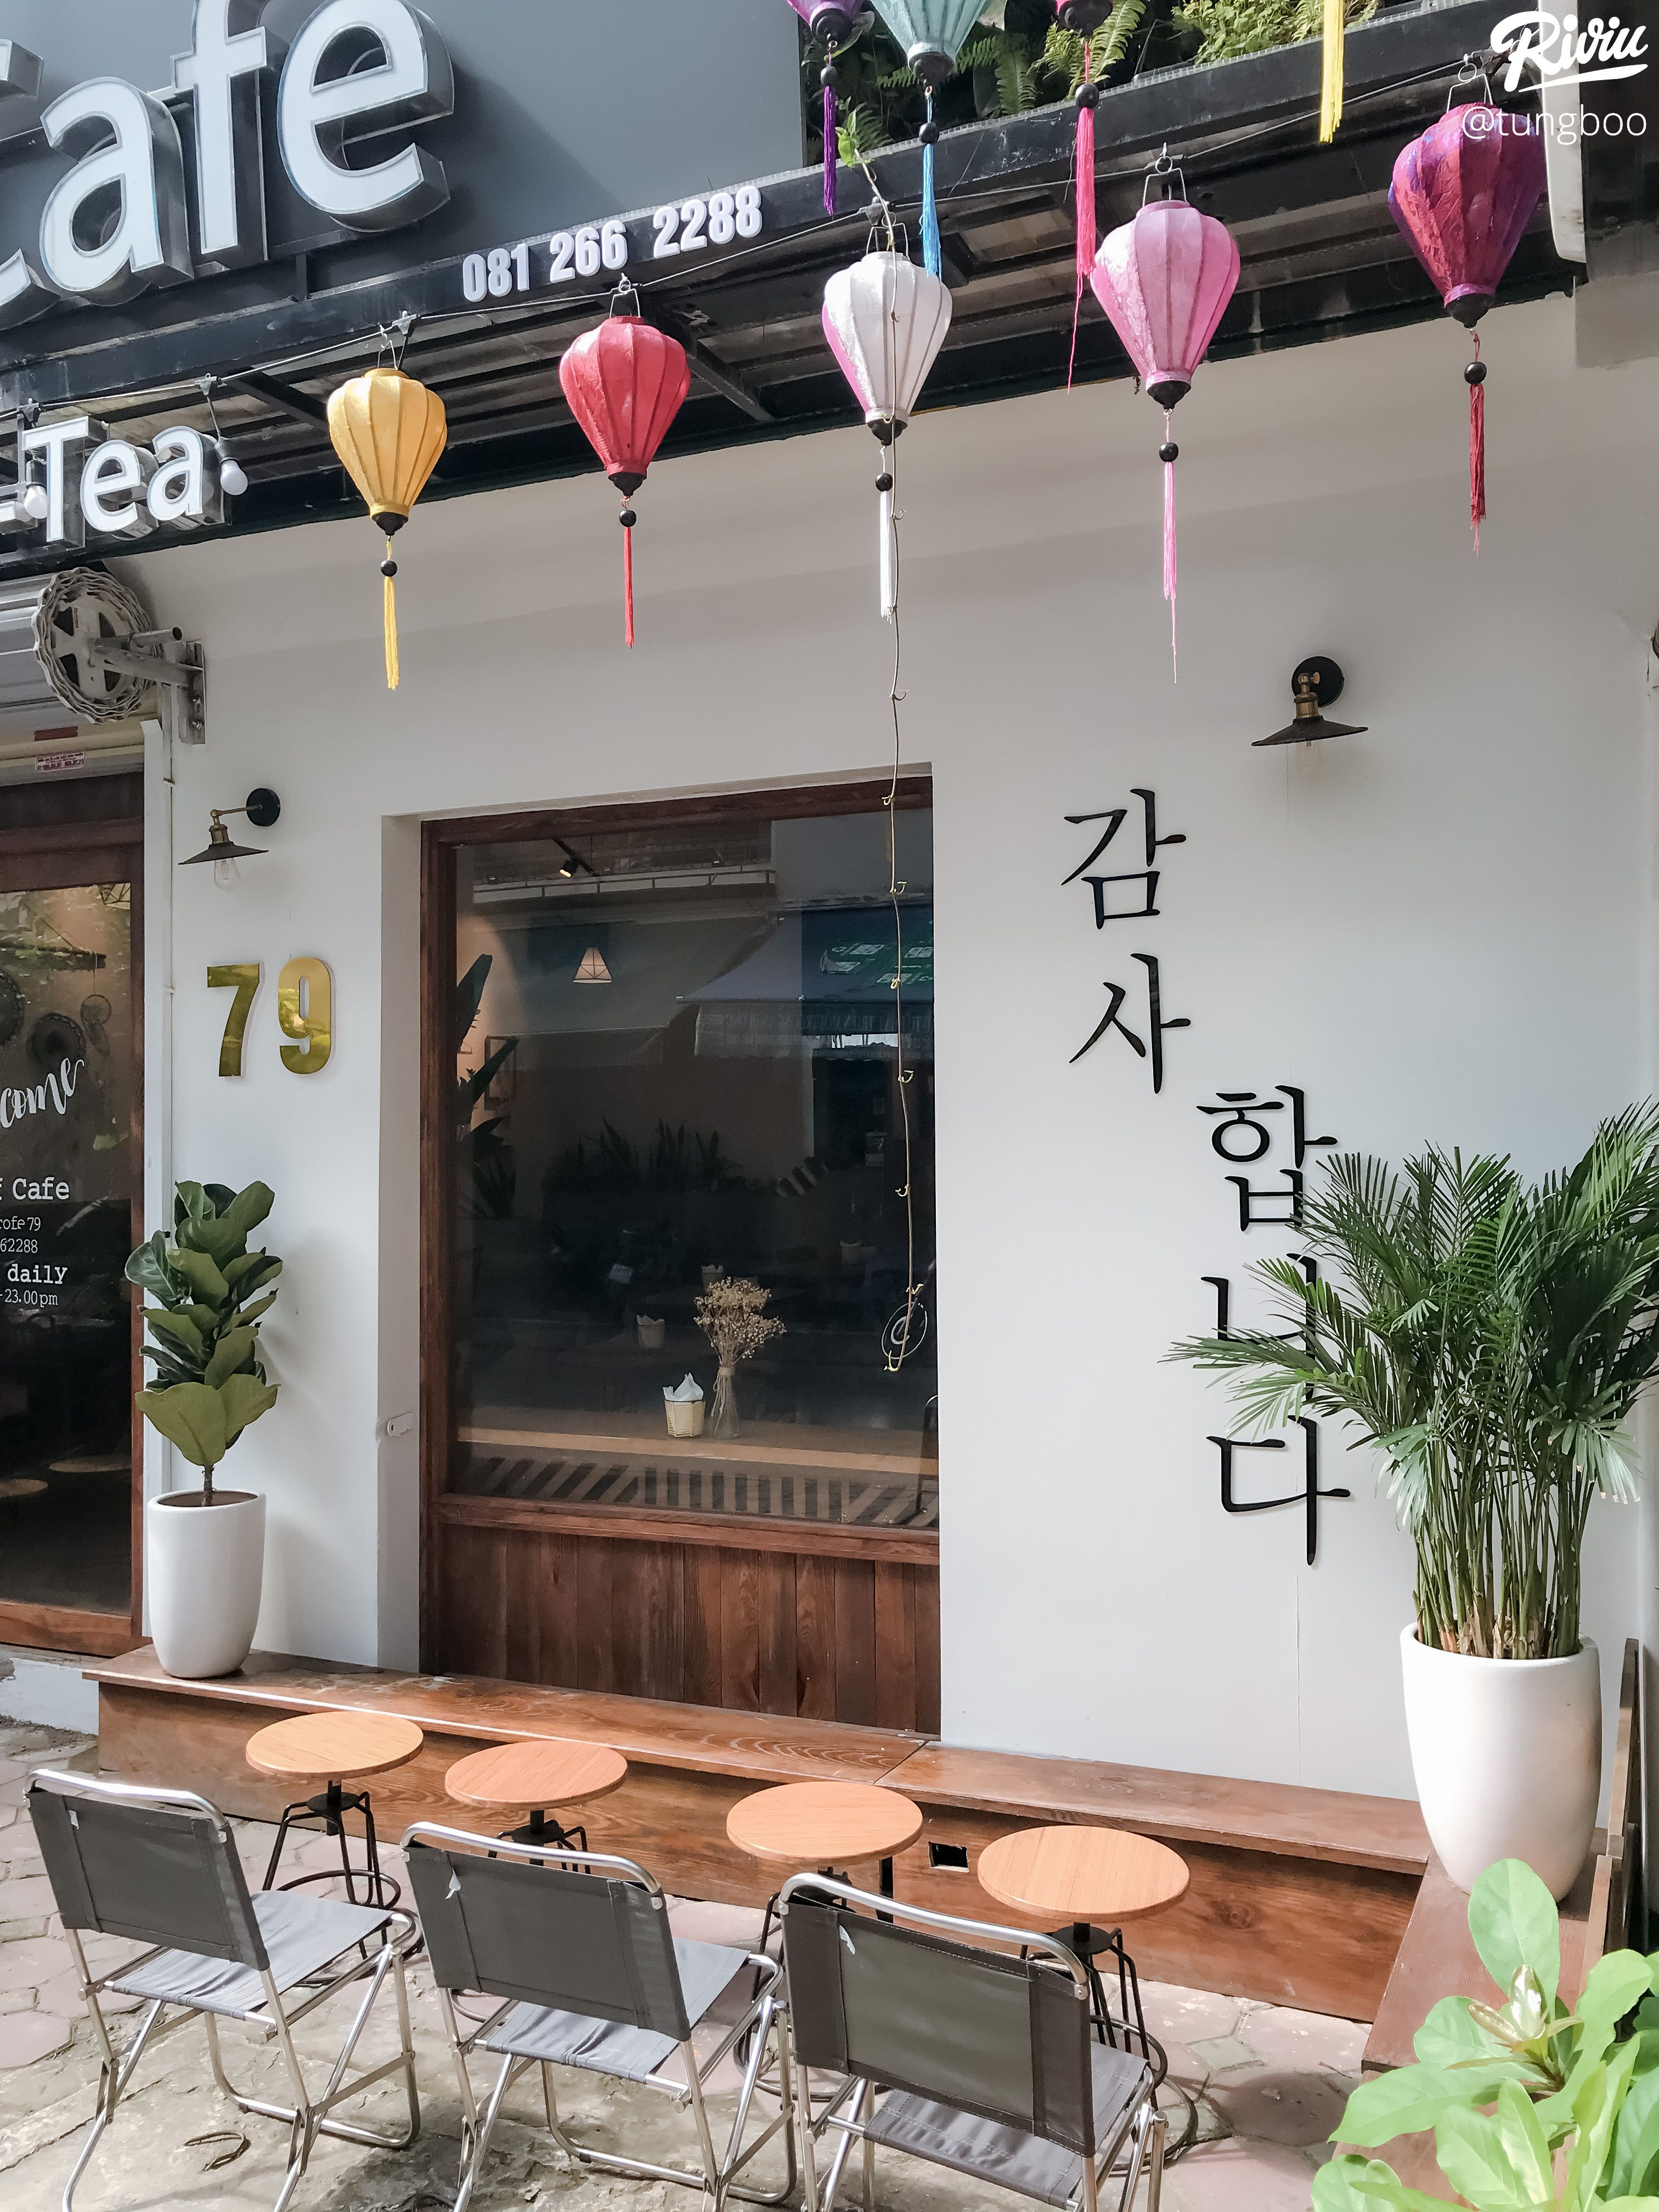 Bạn muốn tìm một quán cà phê thời trang với phong cách Hàn Quốc thú vị? Tiệm cà phê garden style Hàn Quốc sẽ là lựa chọn hoàn hảo cho bạn. Với không gian thiết kế độc đáo và đầy sáng tạo, tiệm cà phê garden style Hàn Quốc sẽ mang lại cho bạn một trải nghiệm độc đáo và thú vị. Thưởng thức đồ uống ngon và ngắm nhìn những chi tiết thiết kế tinh tế, hãy đến tiệm cà phê garden style Hàn Quốc ngay hôm nay để trải nghiệm.